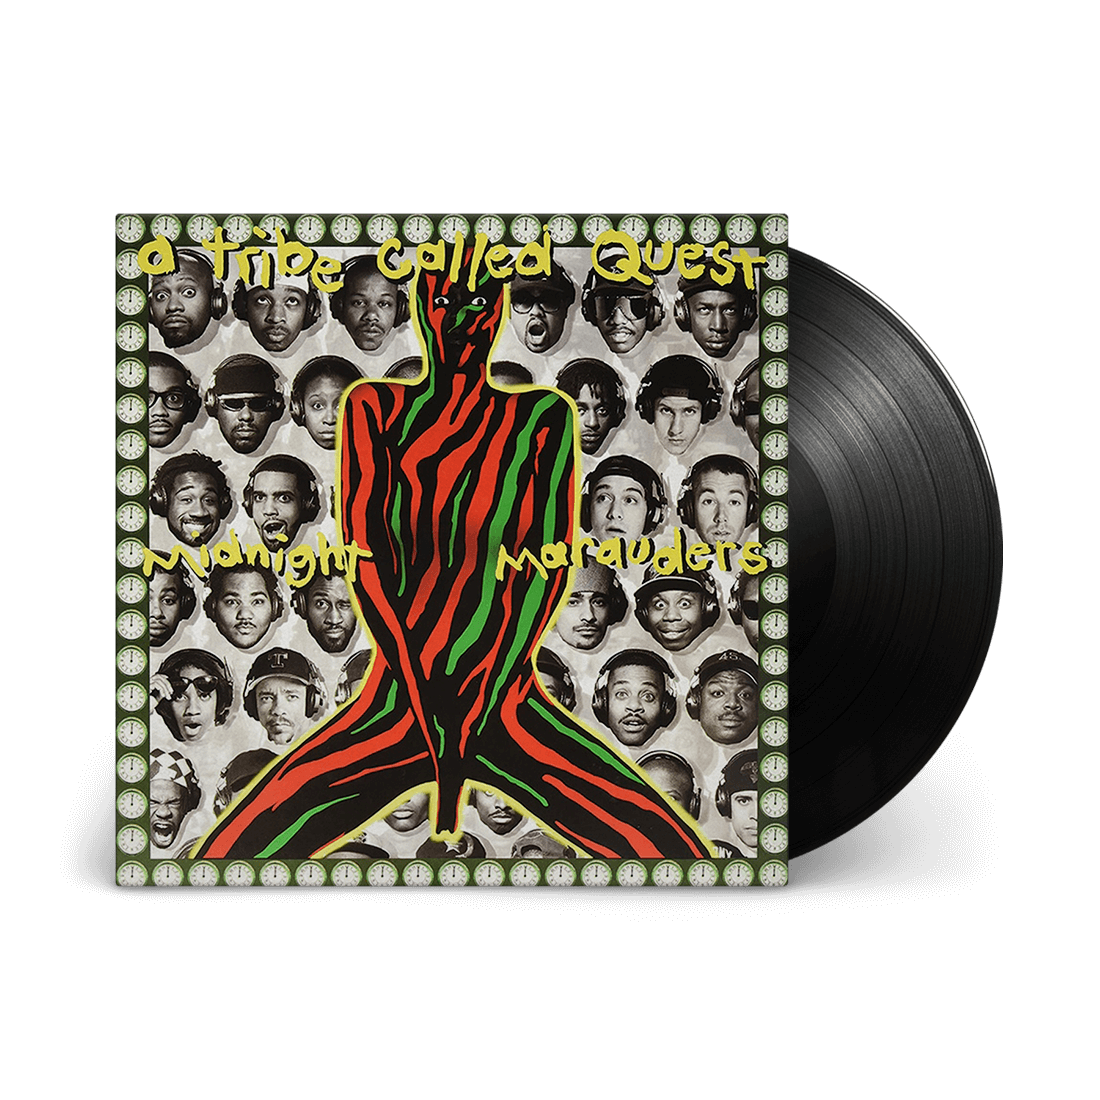 Midnight Marauders: Vinyl LP